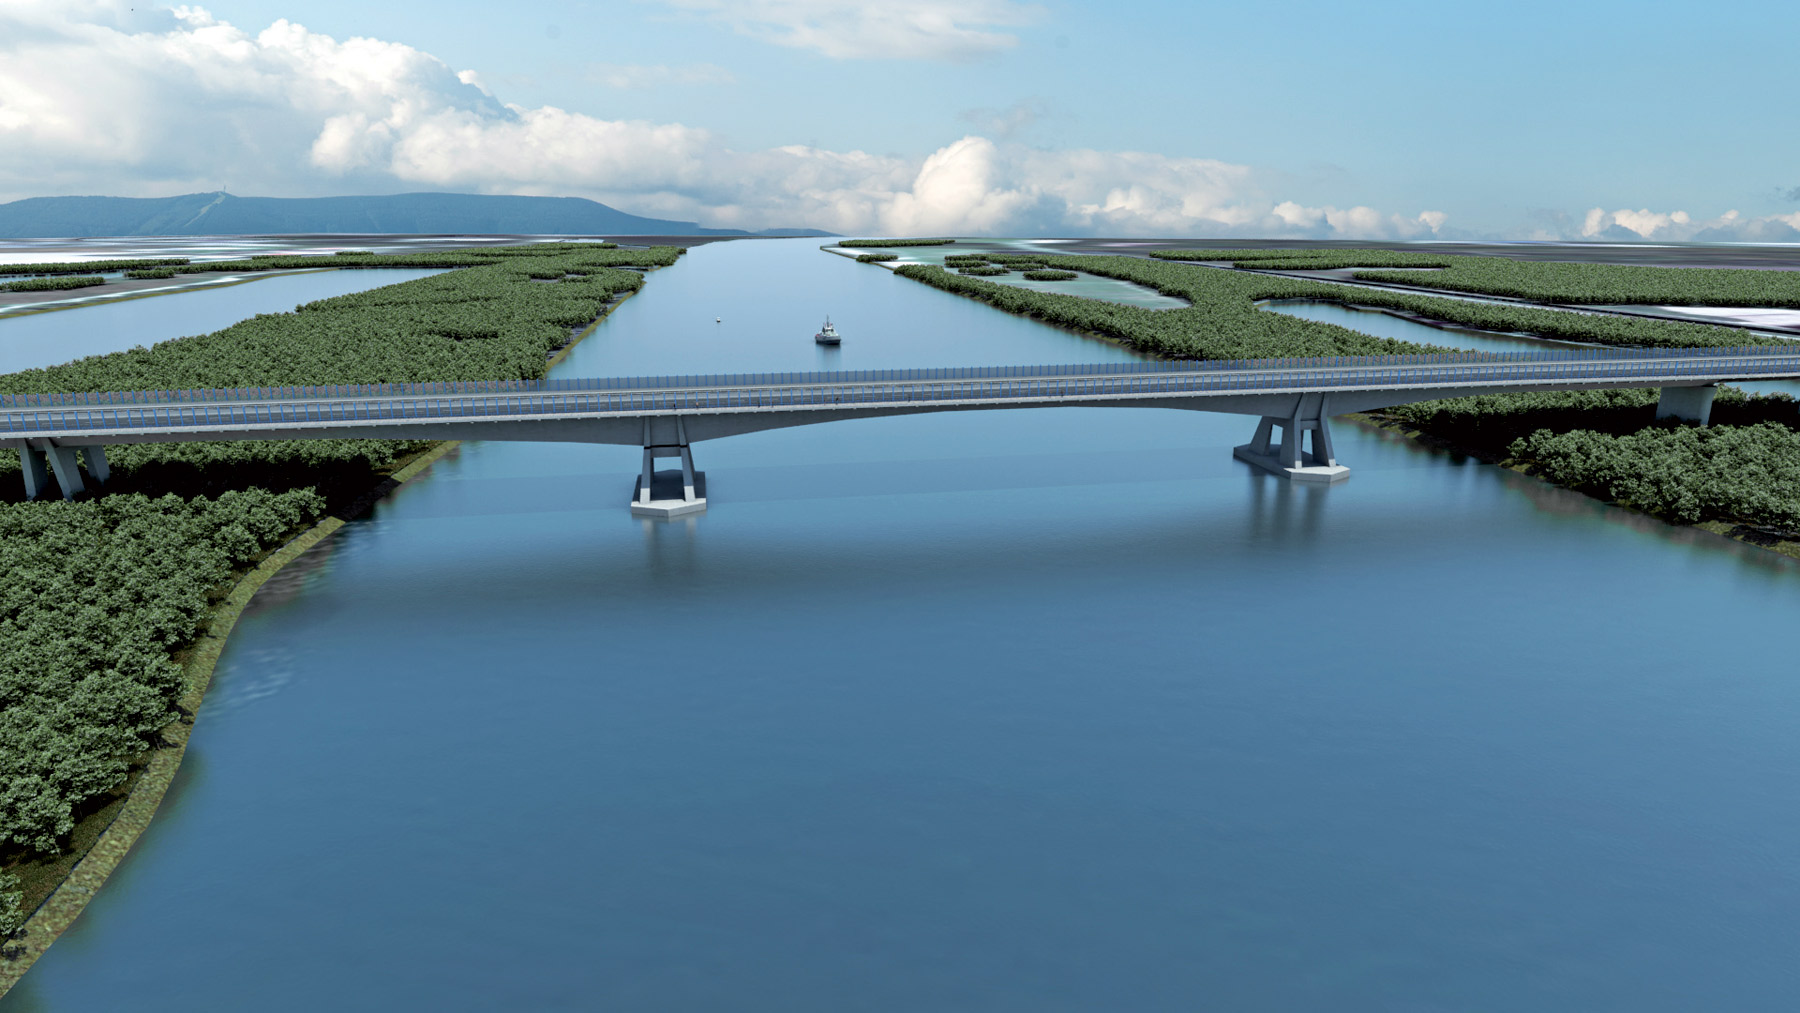 Vizualizácia mosta cez Dunaj